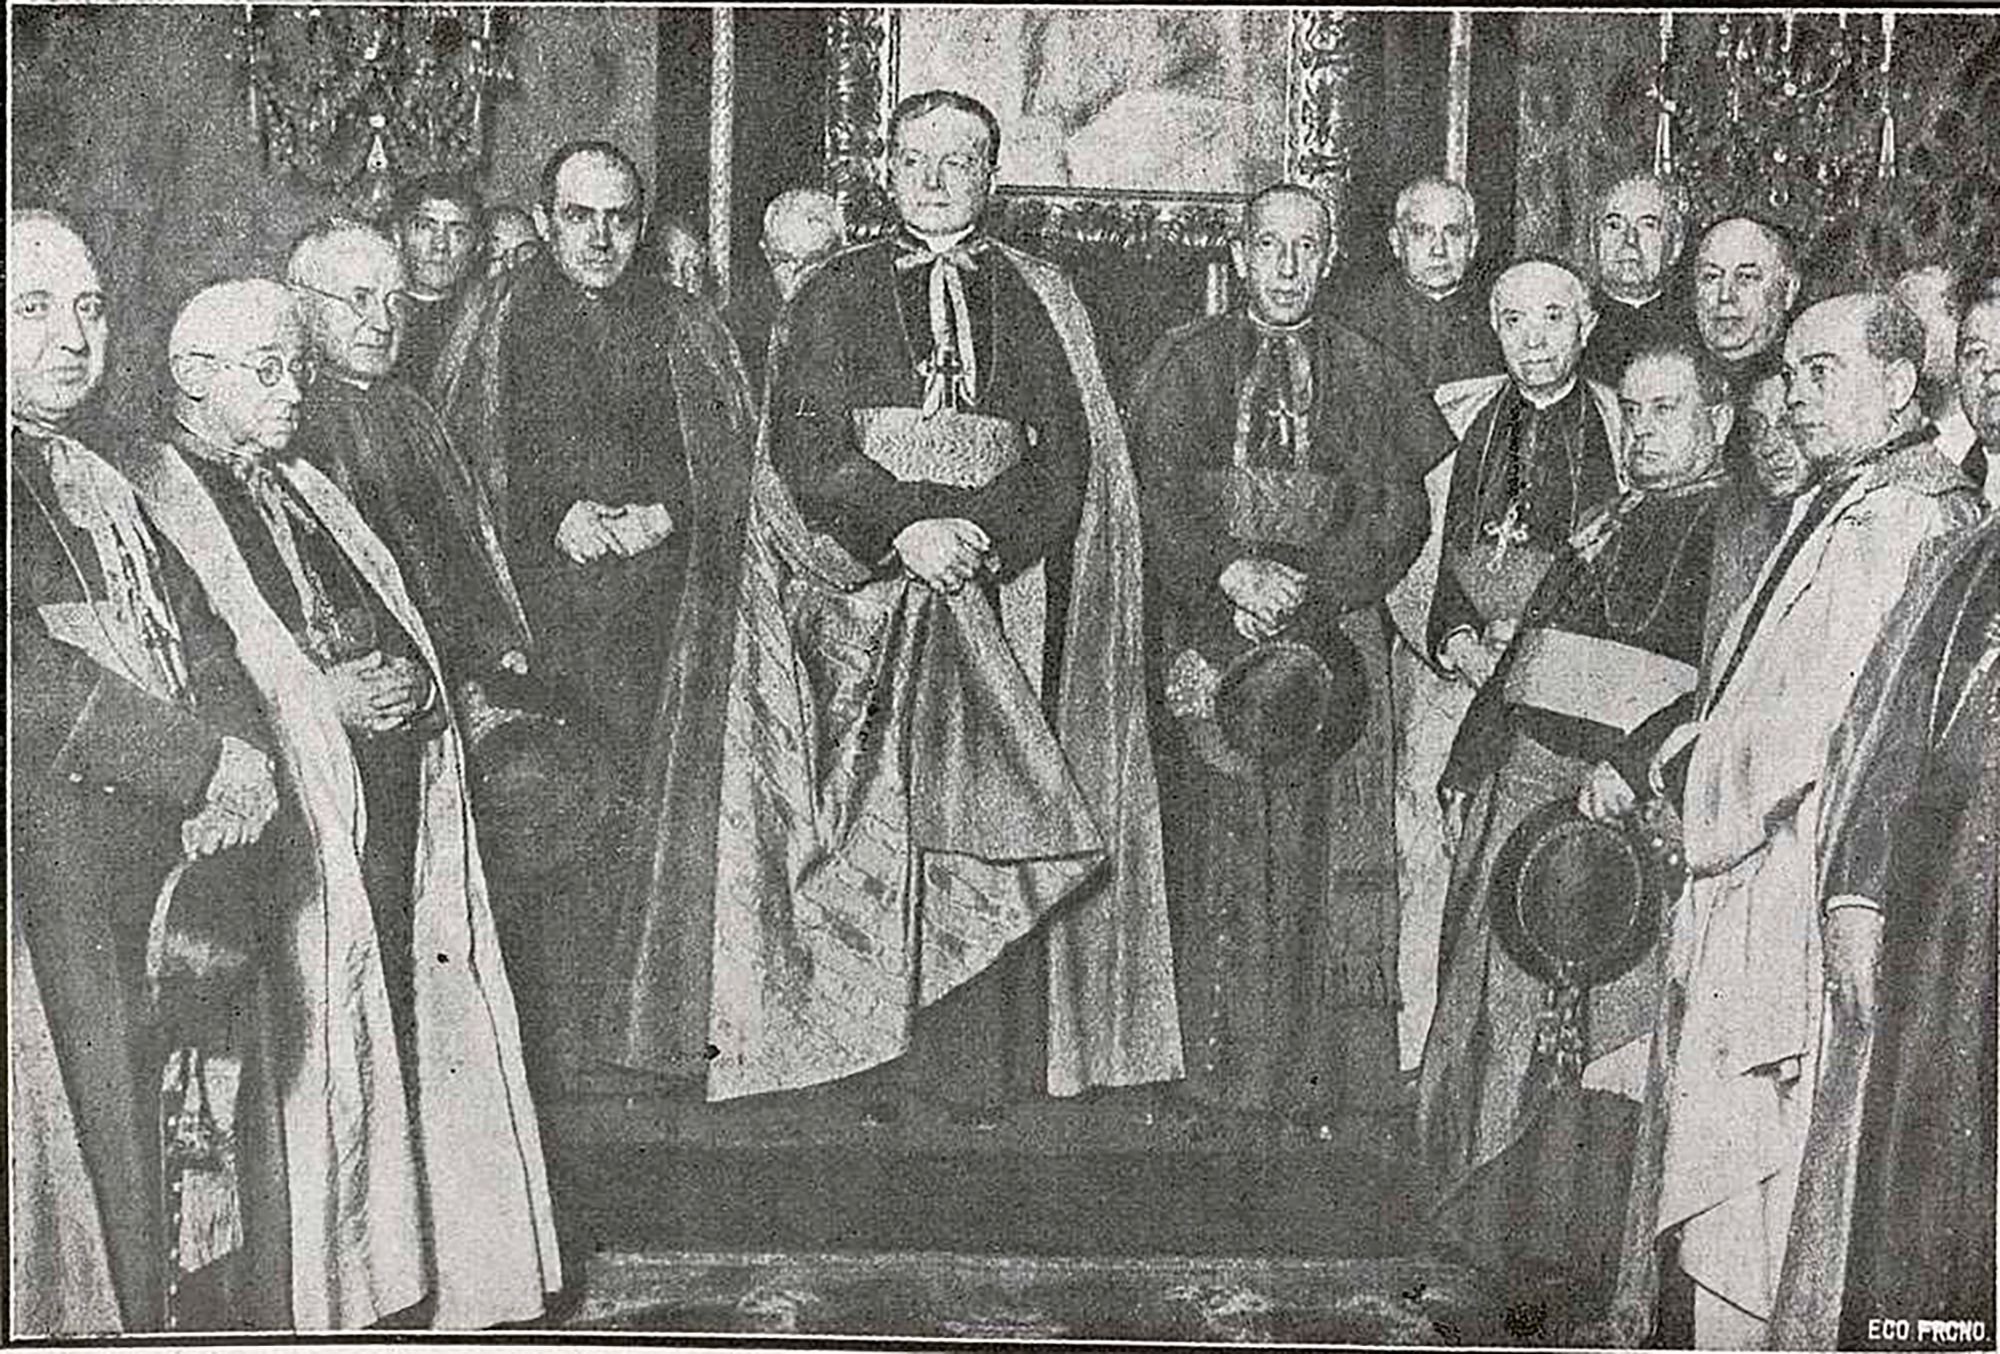 Federico Tedeschini - Nuncio do Vaticano (1929)